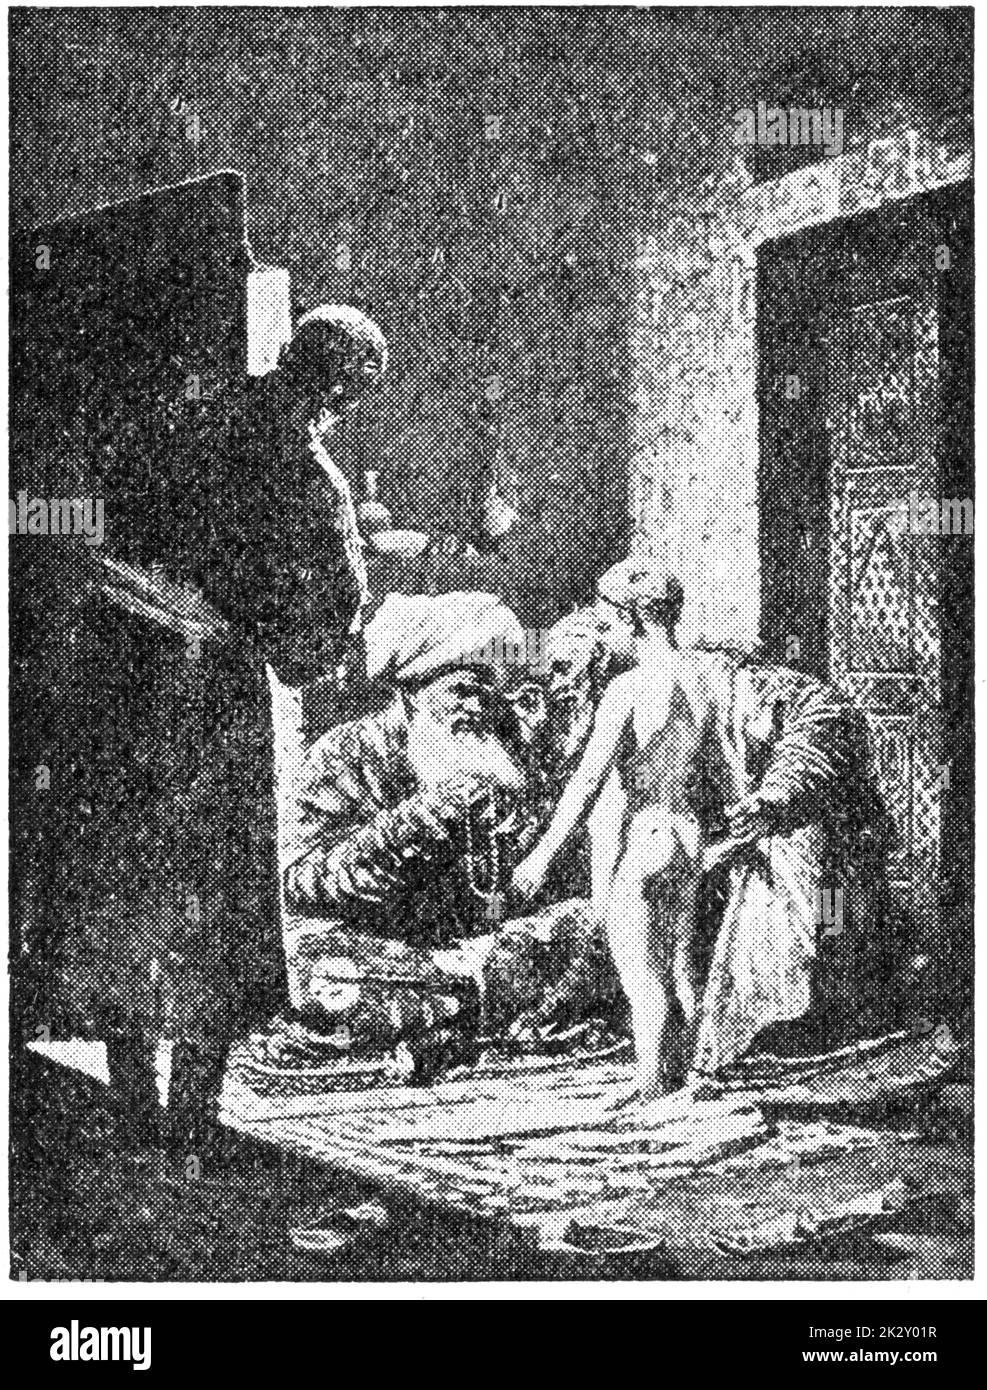 "Sale of a Child-Slave" von einem russischen Maler Wassilij Wassiljewitsch Vereschtschagin. Illustration des 19. Jahrhunderts. Weißer Hintergrund. Stockfoto